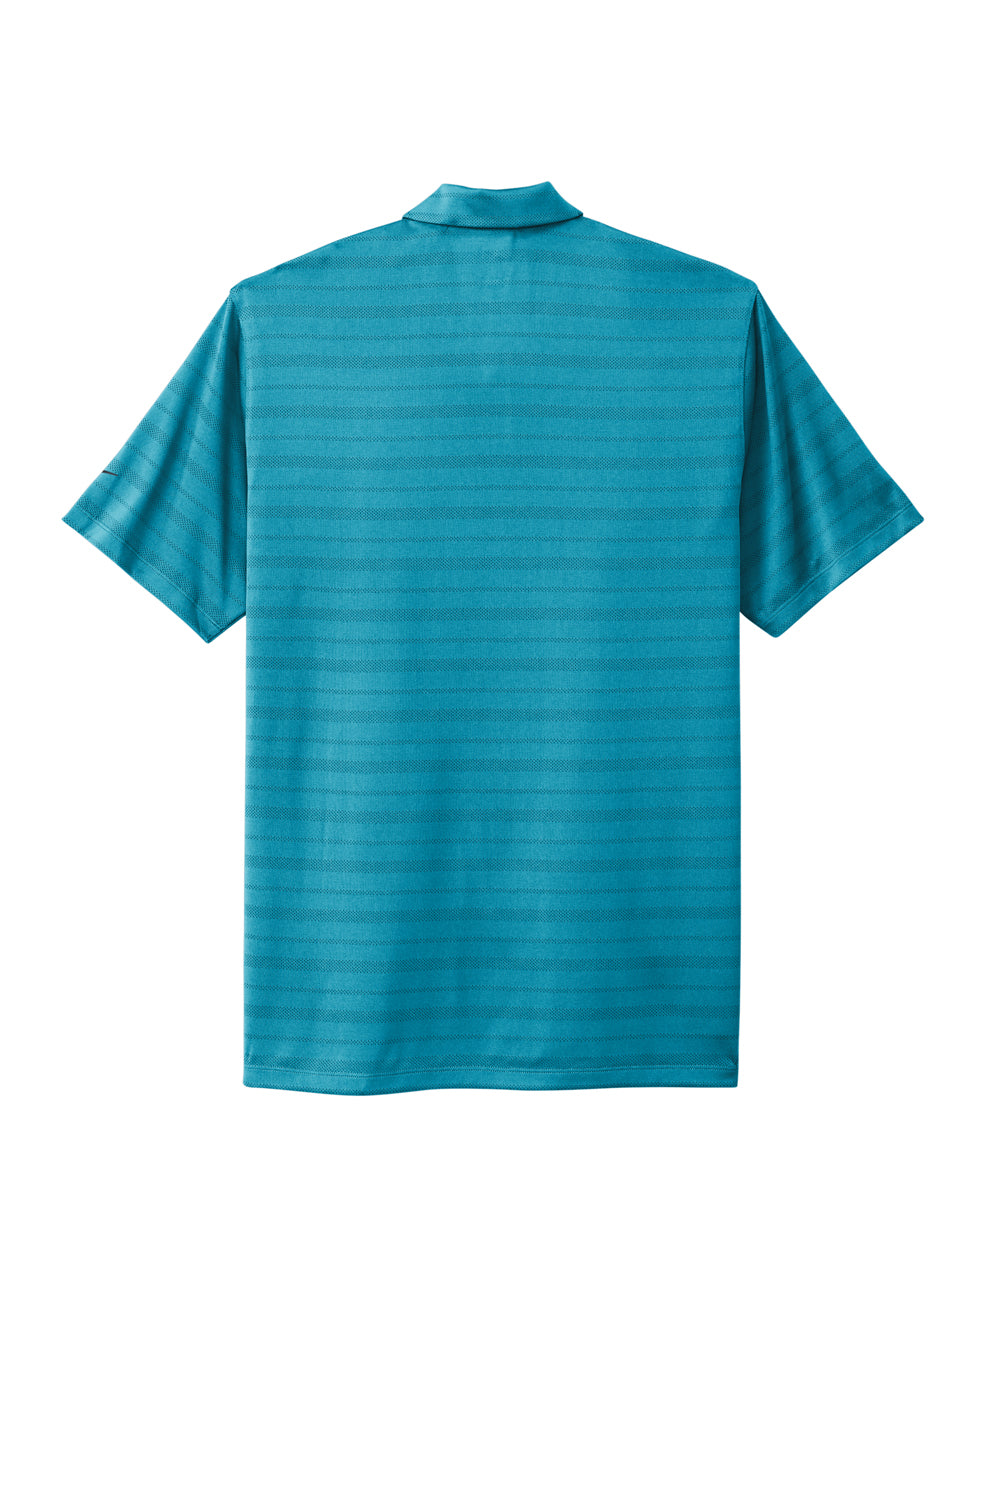 Nike NKDC2115 Mens Vapor Jacquard Dri-Fit Moisture Wicking Short Sleeve Polo Shirt Marina Blue Flat Back